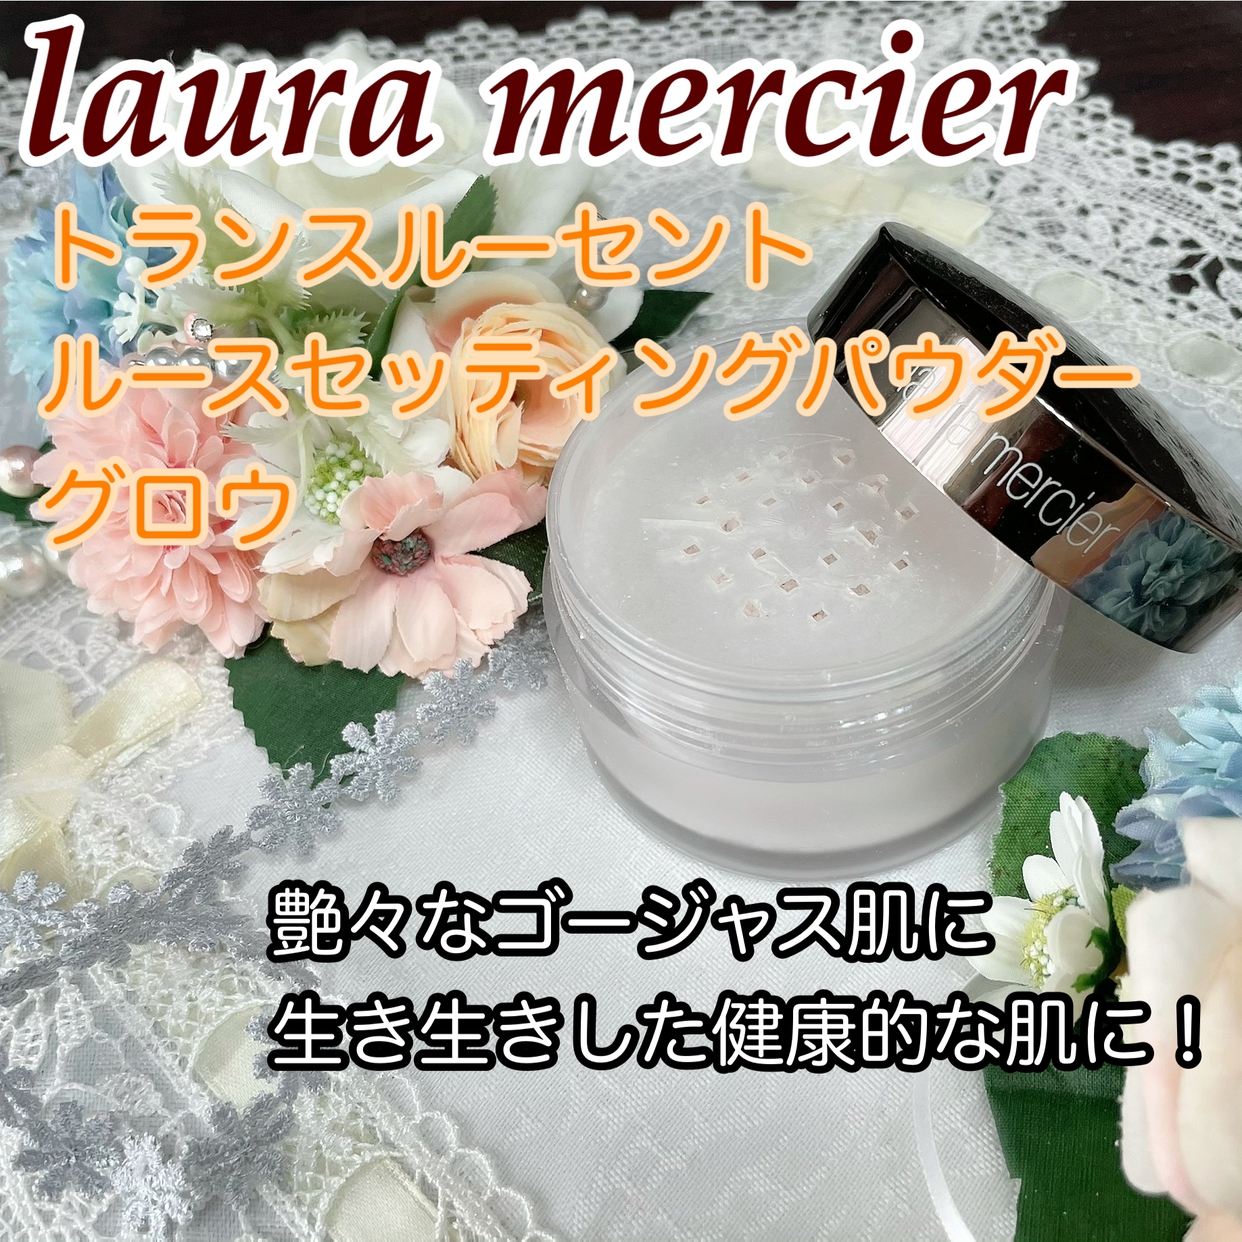 laura mercier(ローラ メルシエ) ルースセッティングパウダー トランスルーセントの良い点・メリットに関するかおきちさんの口コミ画像1